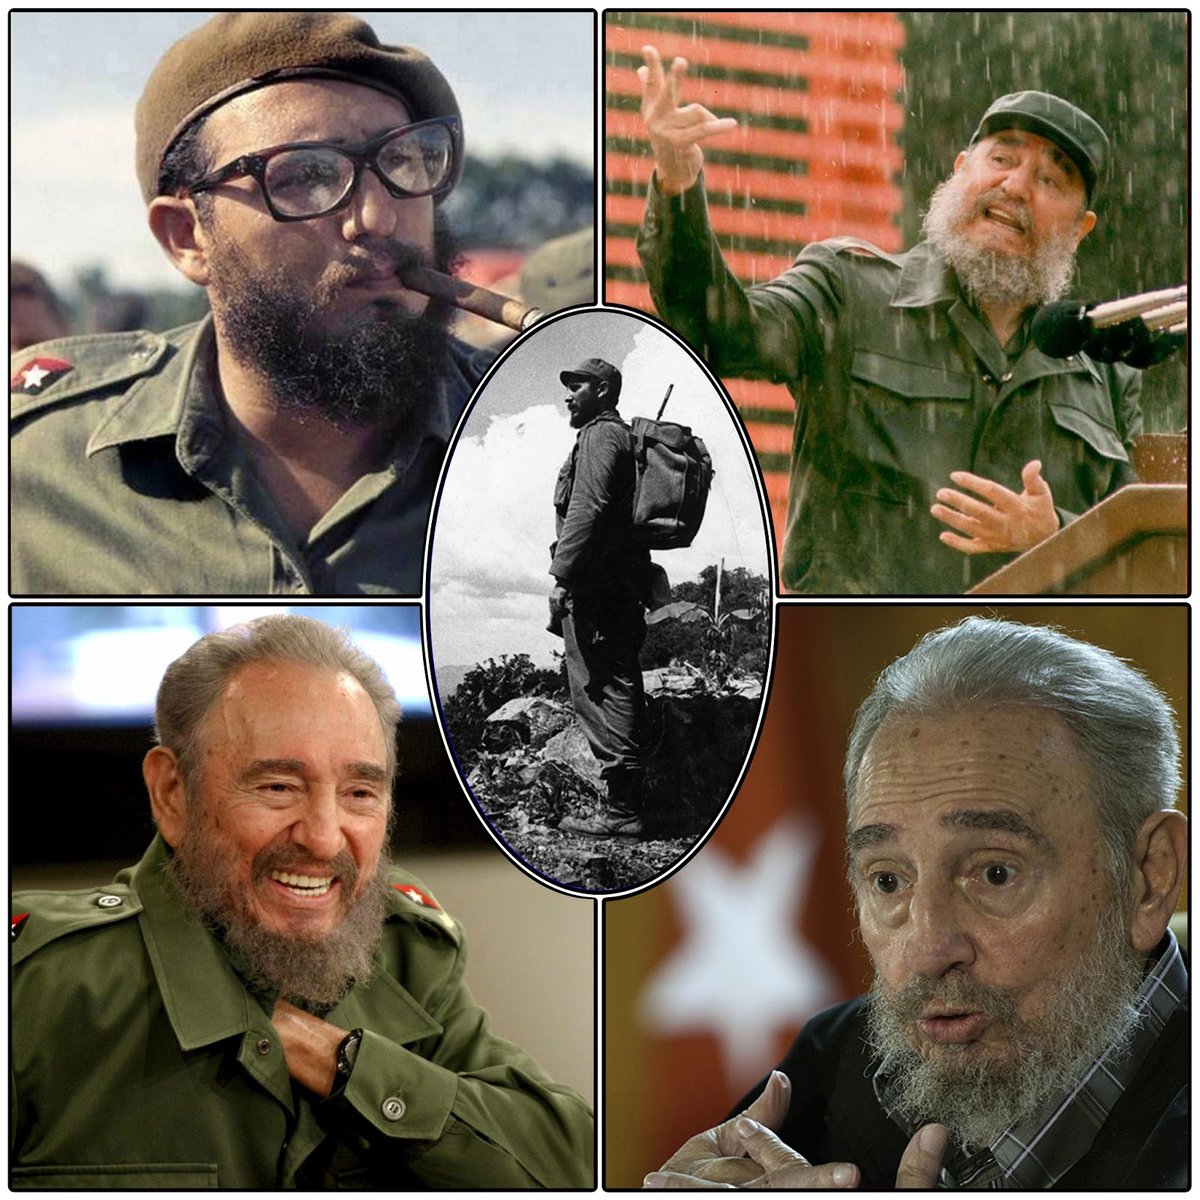 Buenas tardes Guerrilleros 🇨🇺 💪. “A la patria se le conoce por su heroísmo ,por su espíritu,por su valor ,por su historia revolucionaria”. #FidelPorSiempre #Cuba #CubaViveEnlaHistoría